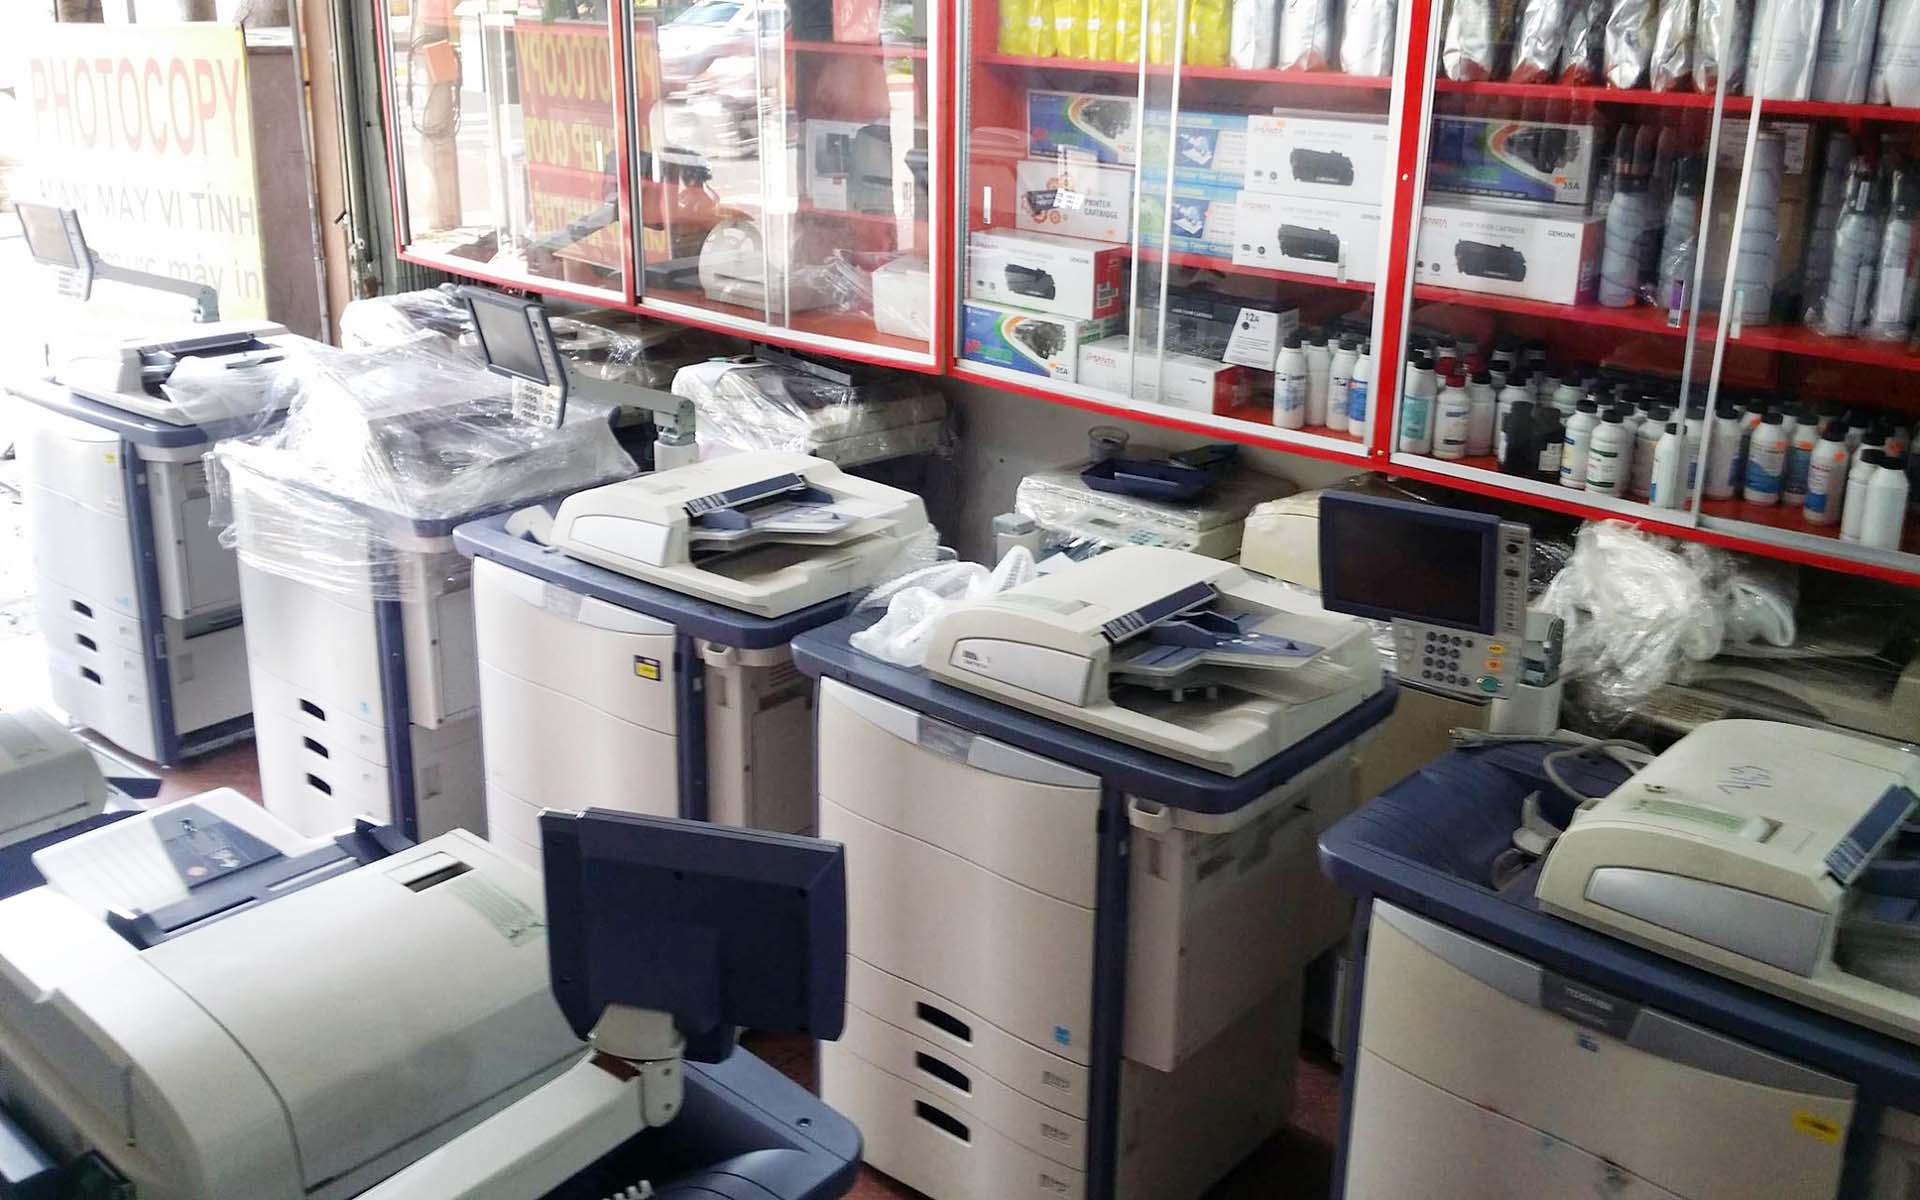 Cần chọn máy photocopy có chất lượng, phù hợp với nhu cầu dùng